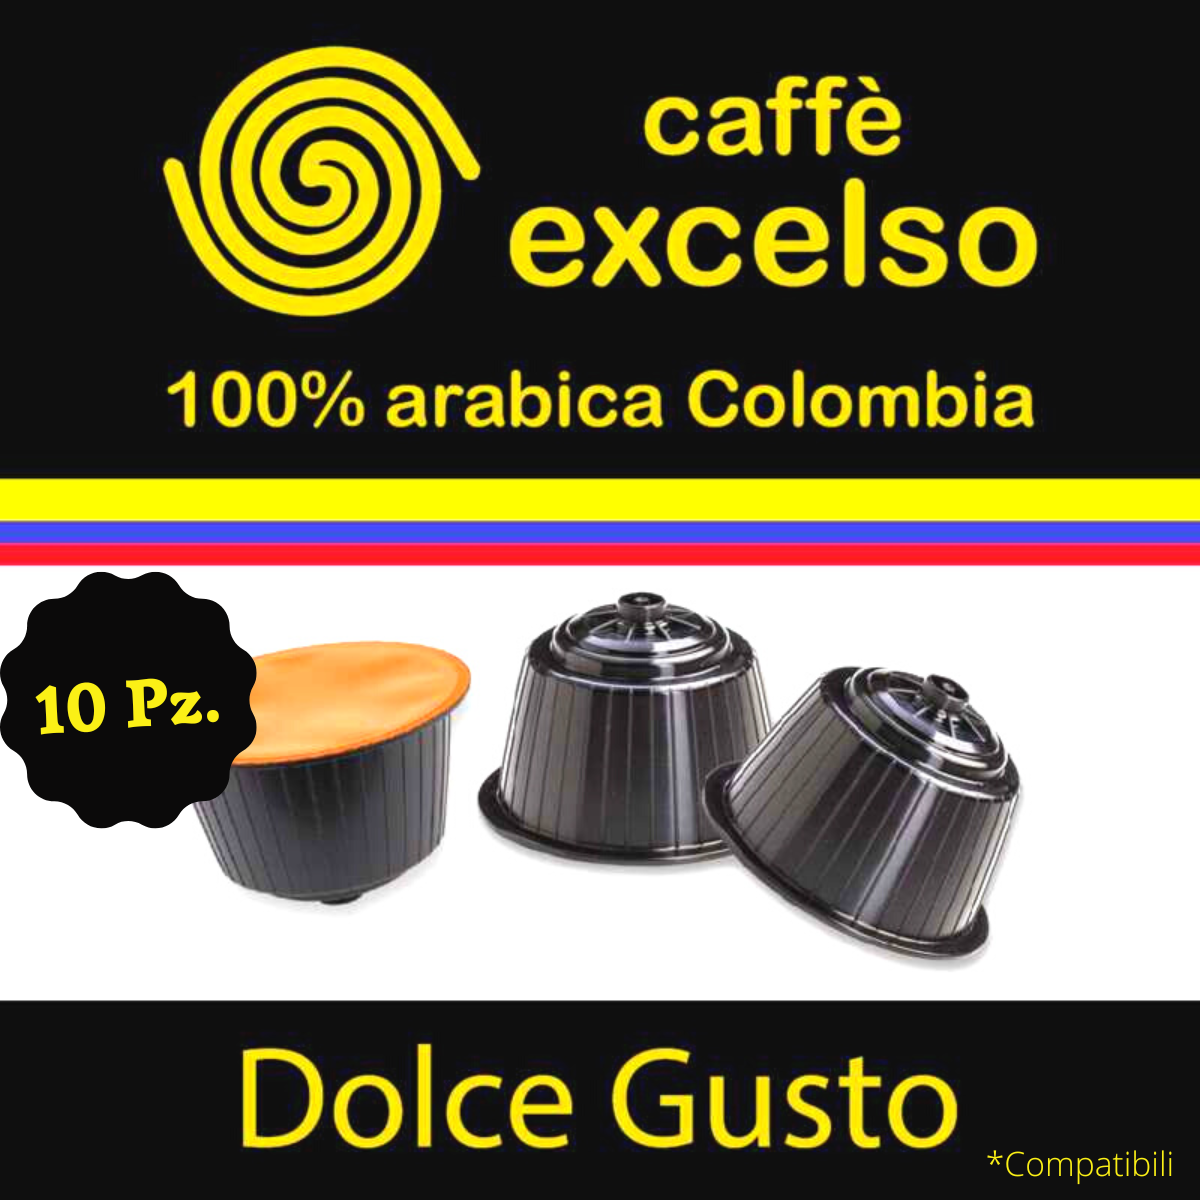 https://images.artigianoinfiera.it/Product/30470_GECO_COMPANY_DI_TANTALO_CORRADO/capsule-compatibili-dolce-gusto-caffe-excelso-colombia-100-arabica-supremo-10pz4.png